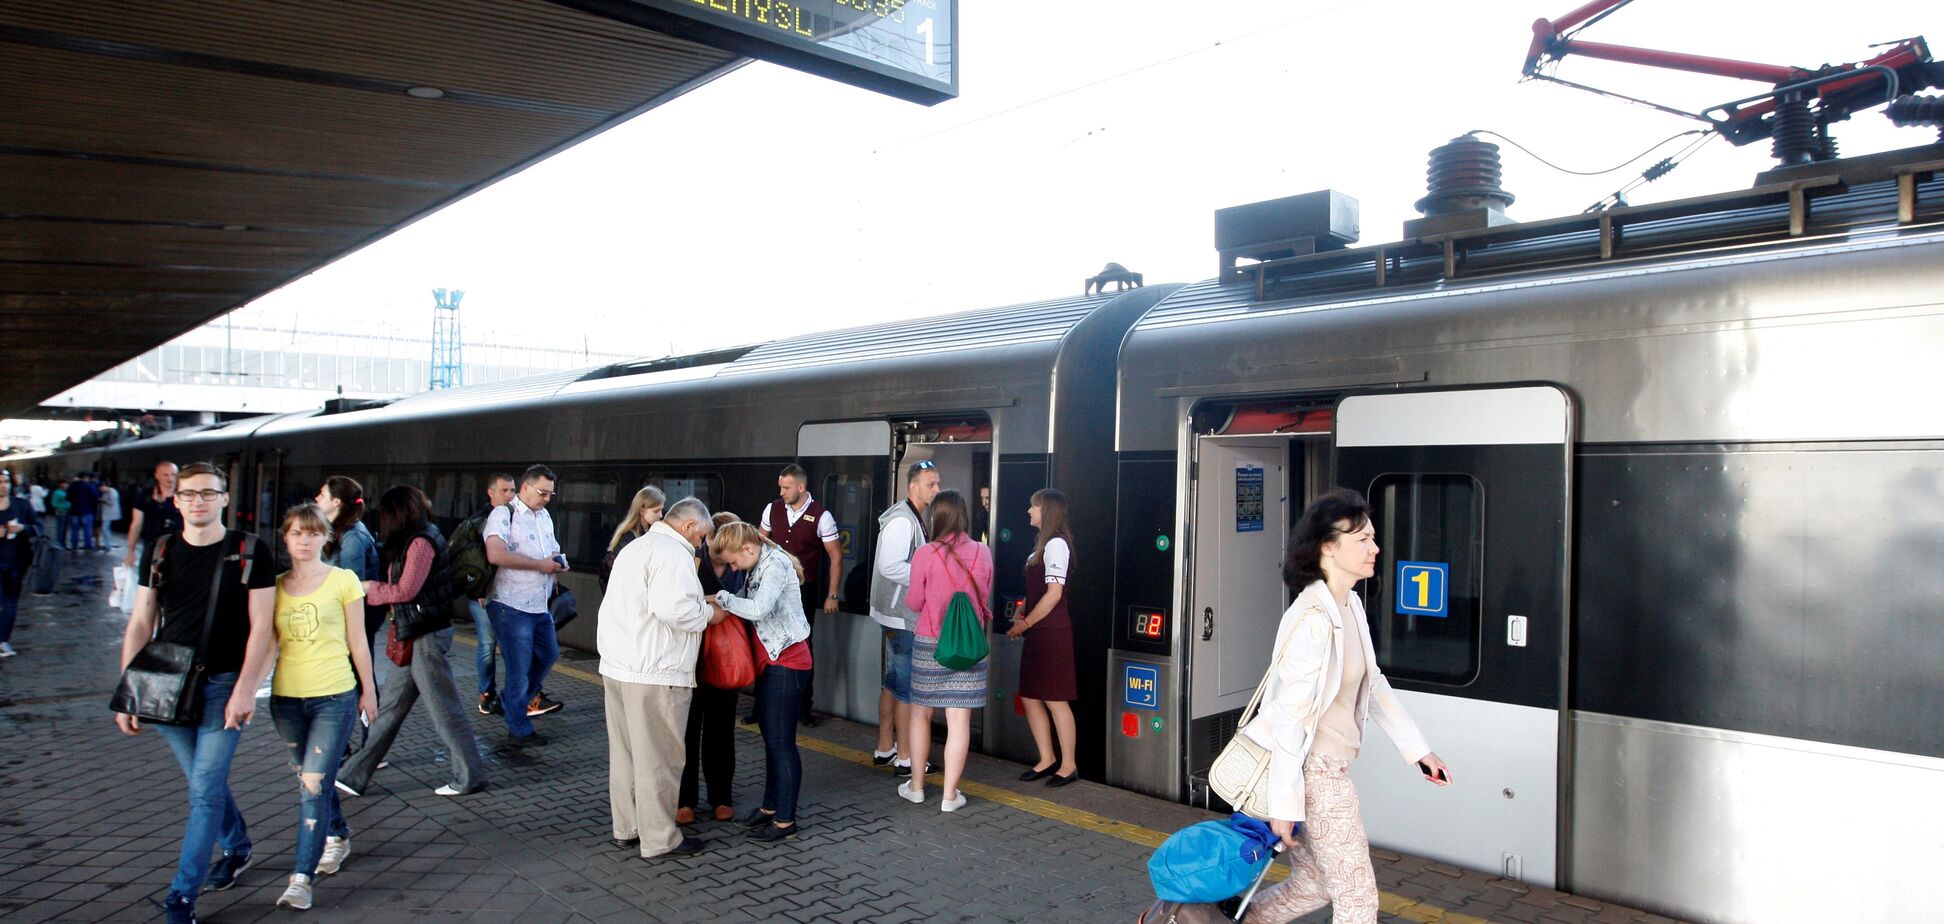 'Укрзалізниця' запустила онлайн-продажу билетов на два международных поезда